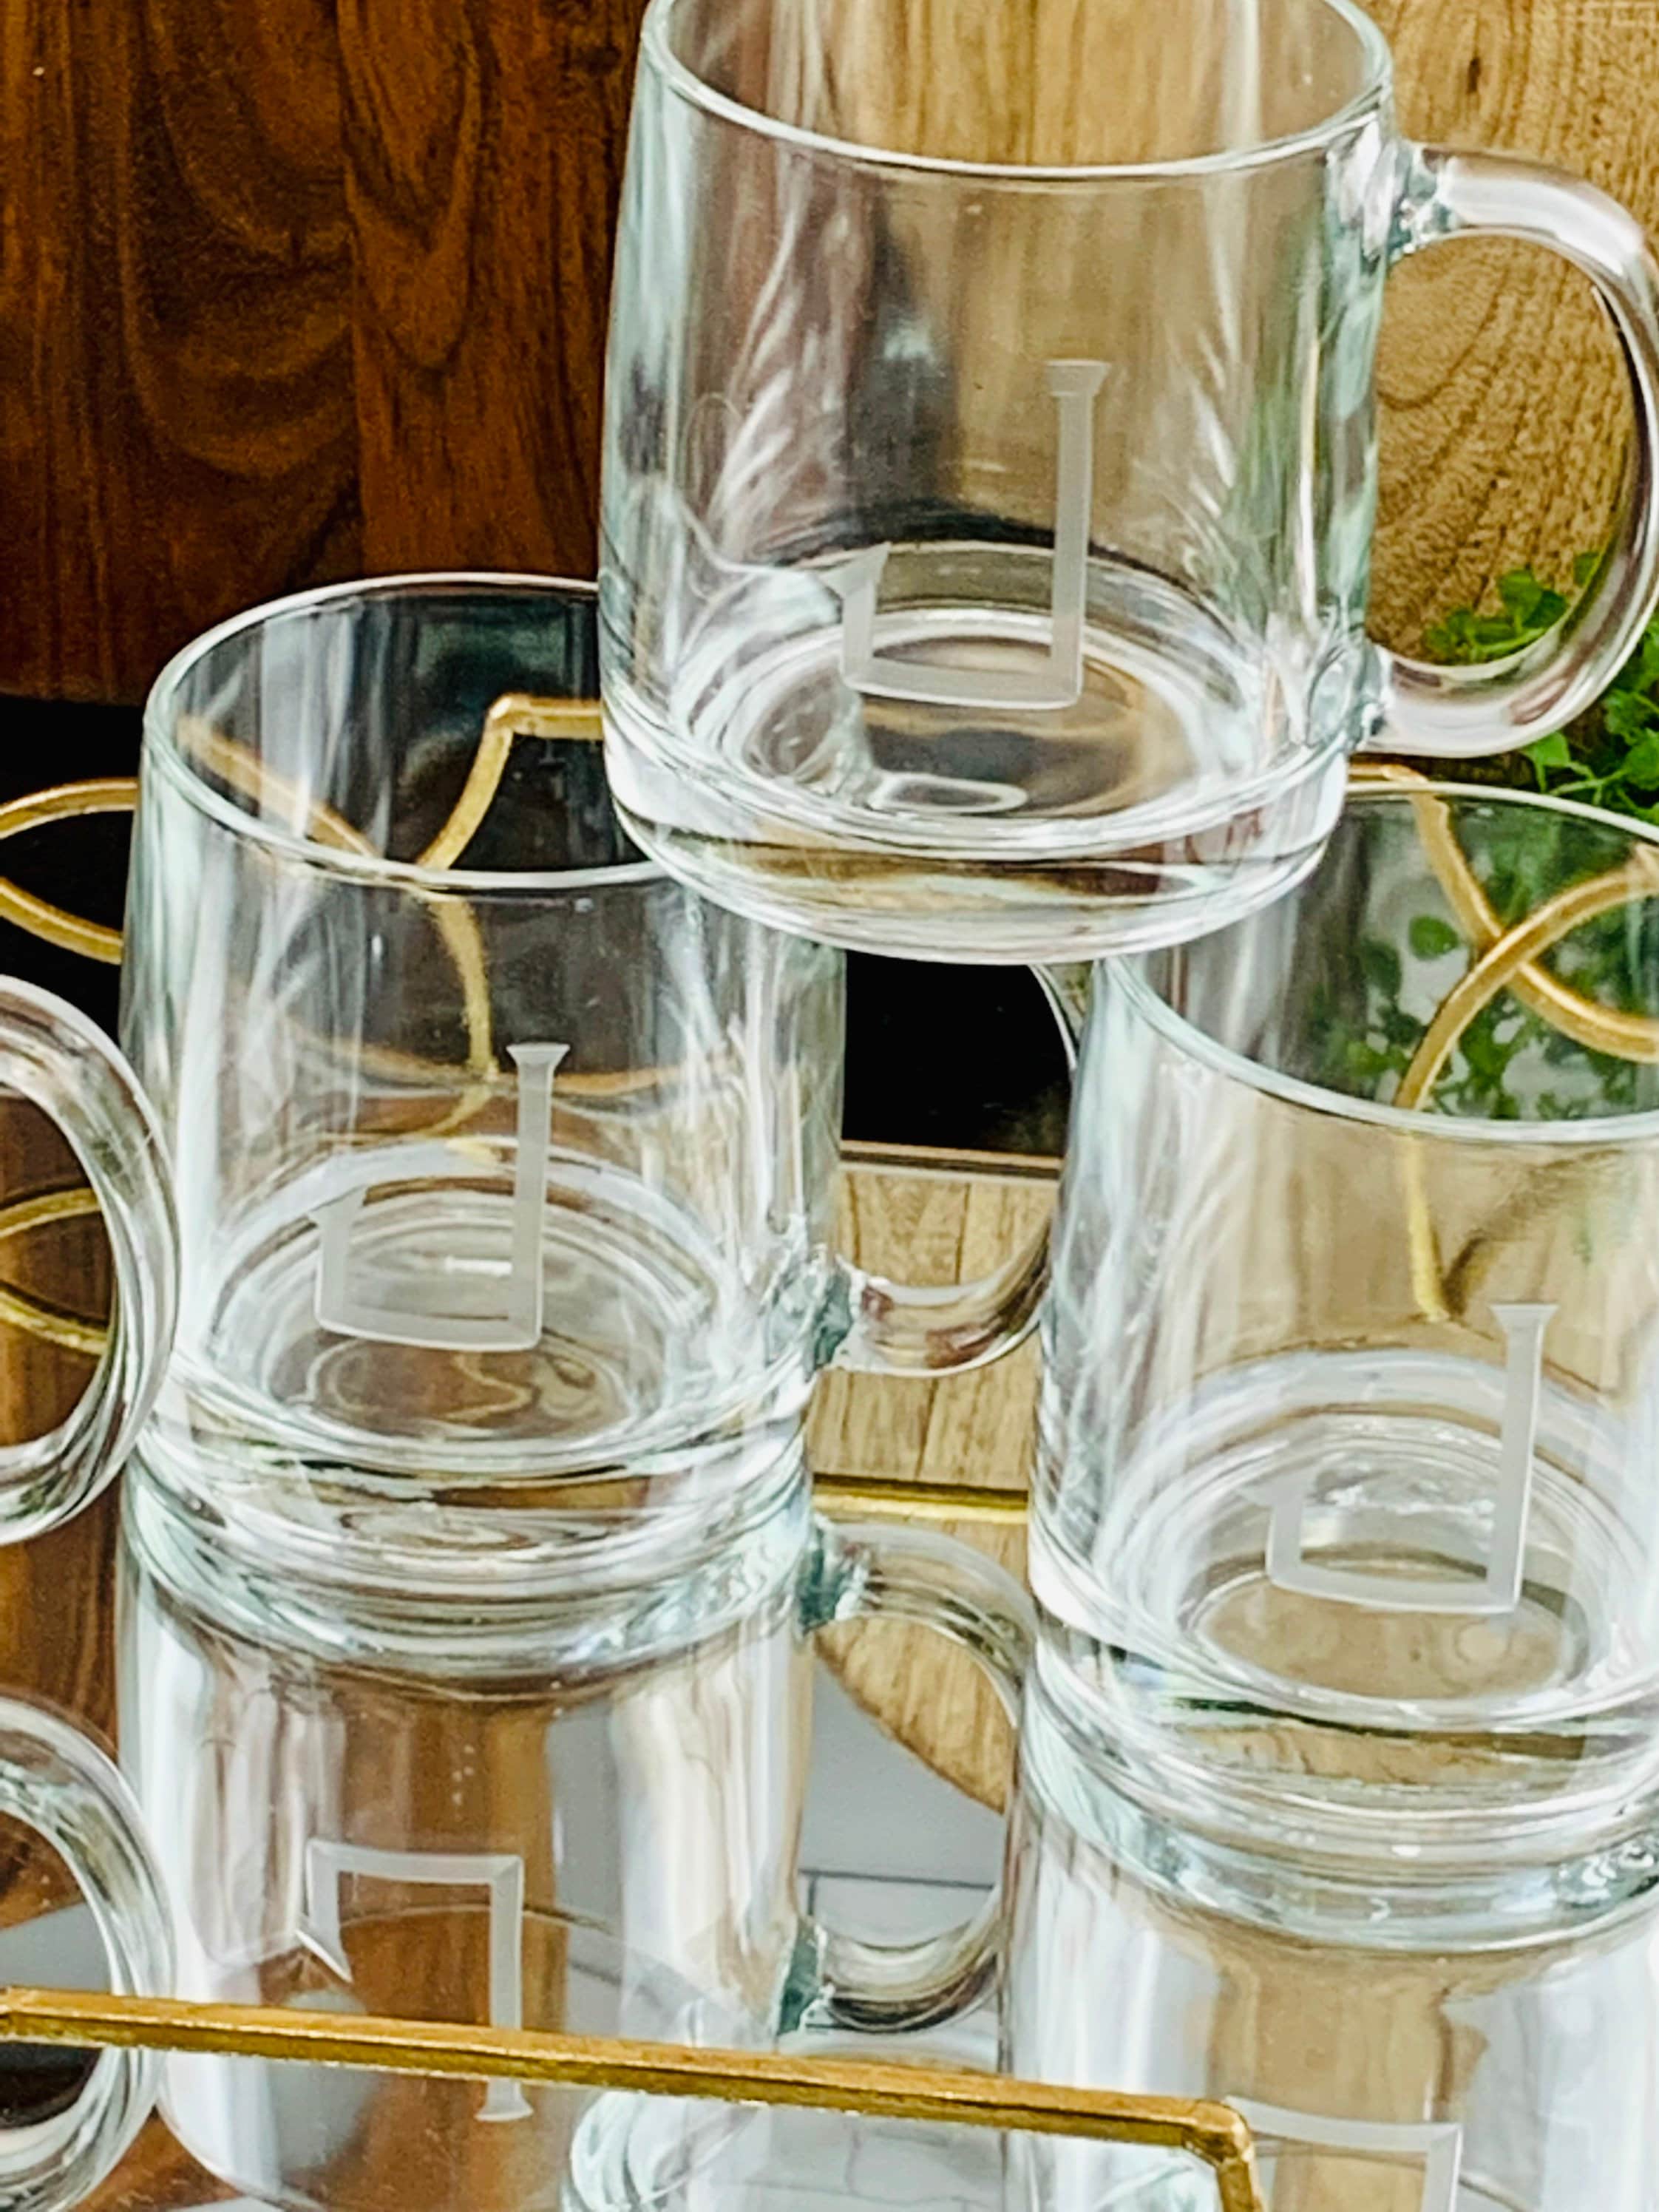 Single Letter Monogrammed Glass Coffee Mug (13 oz.) — Cartledge Crafts